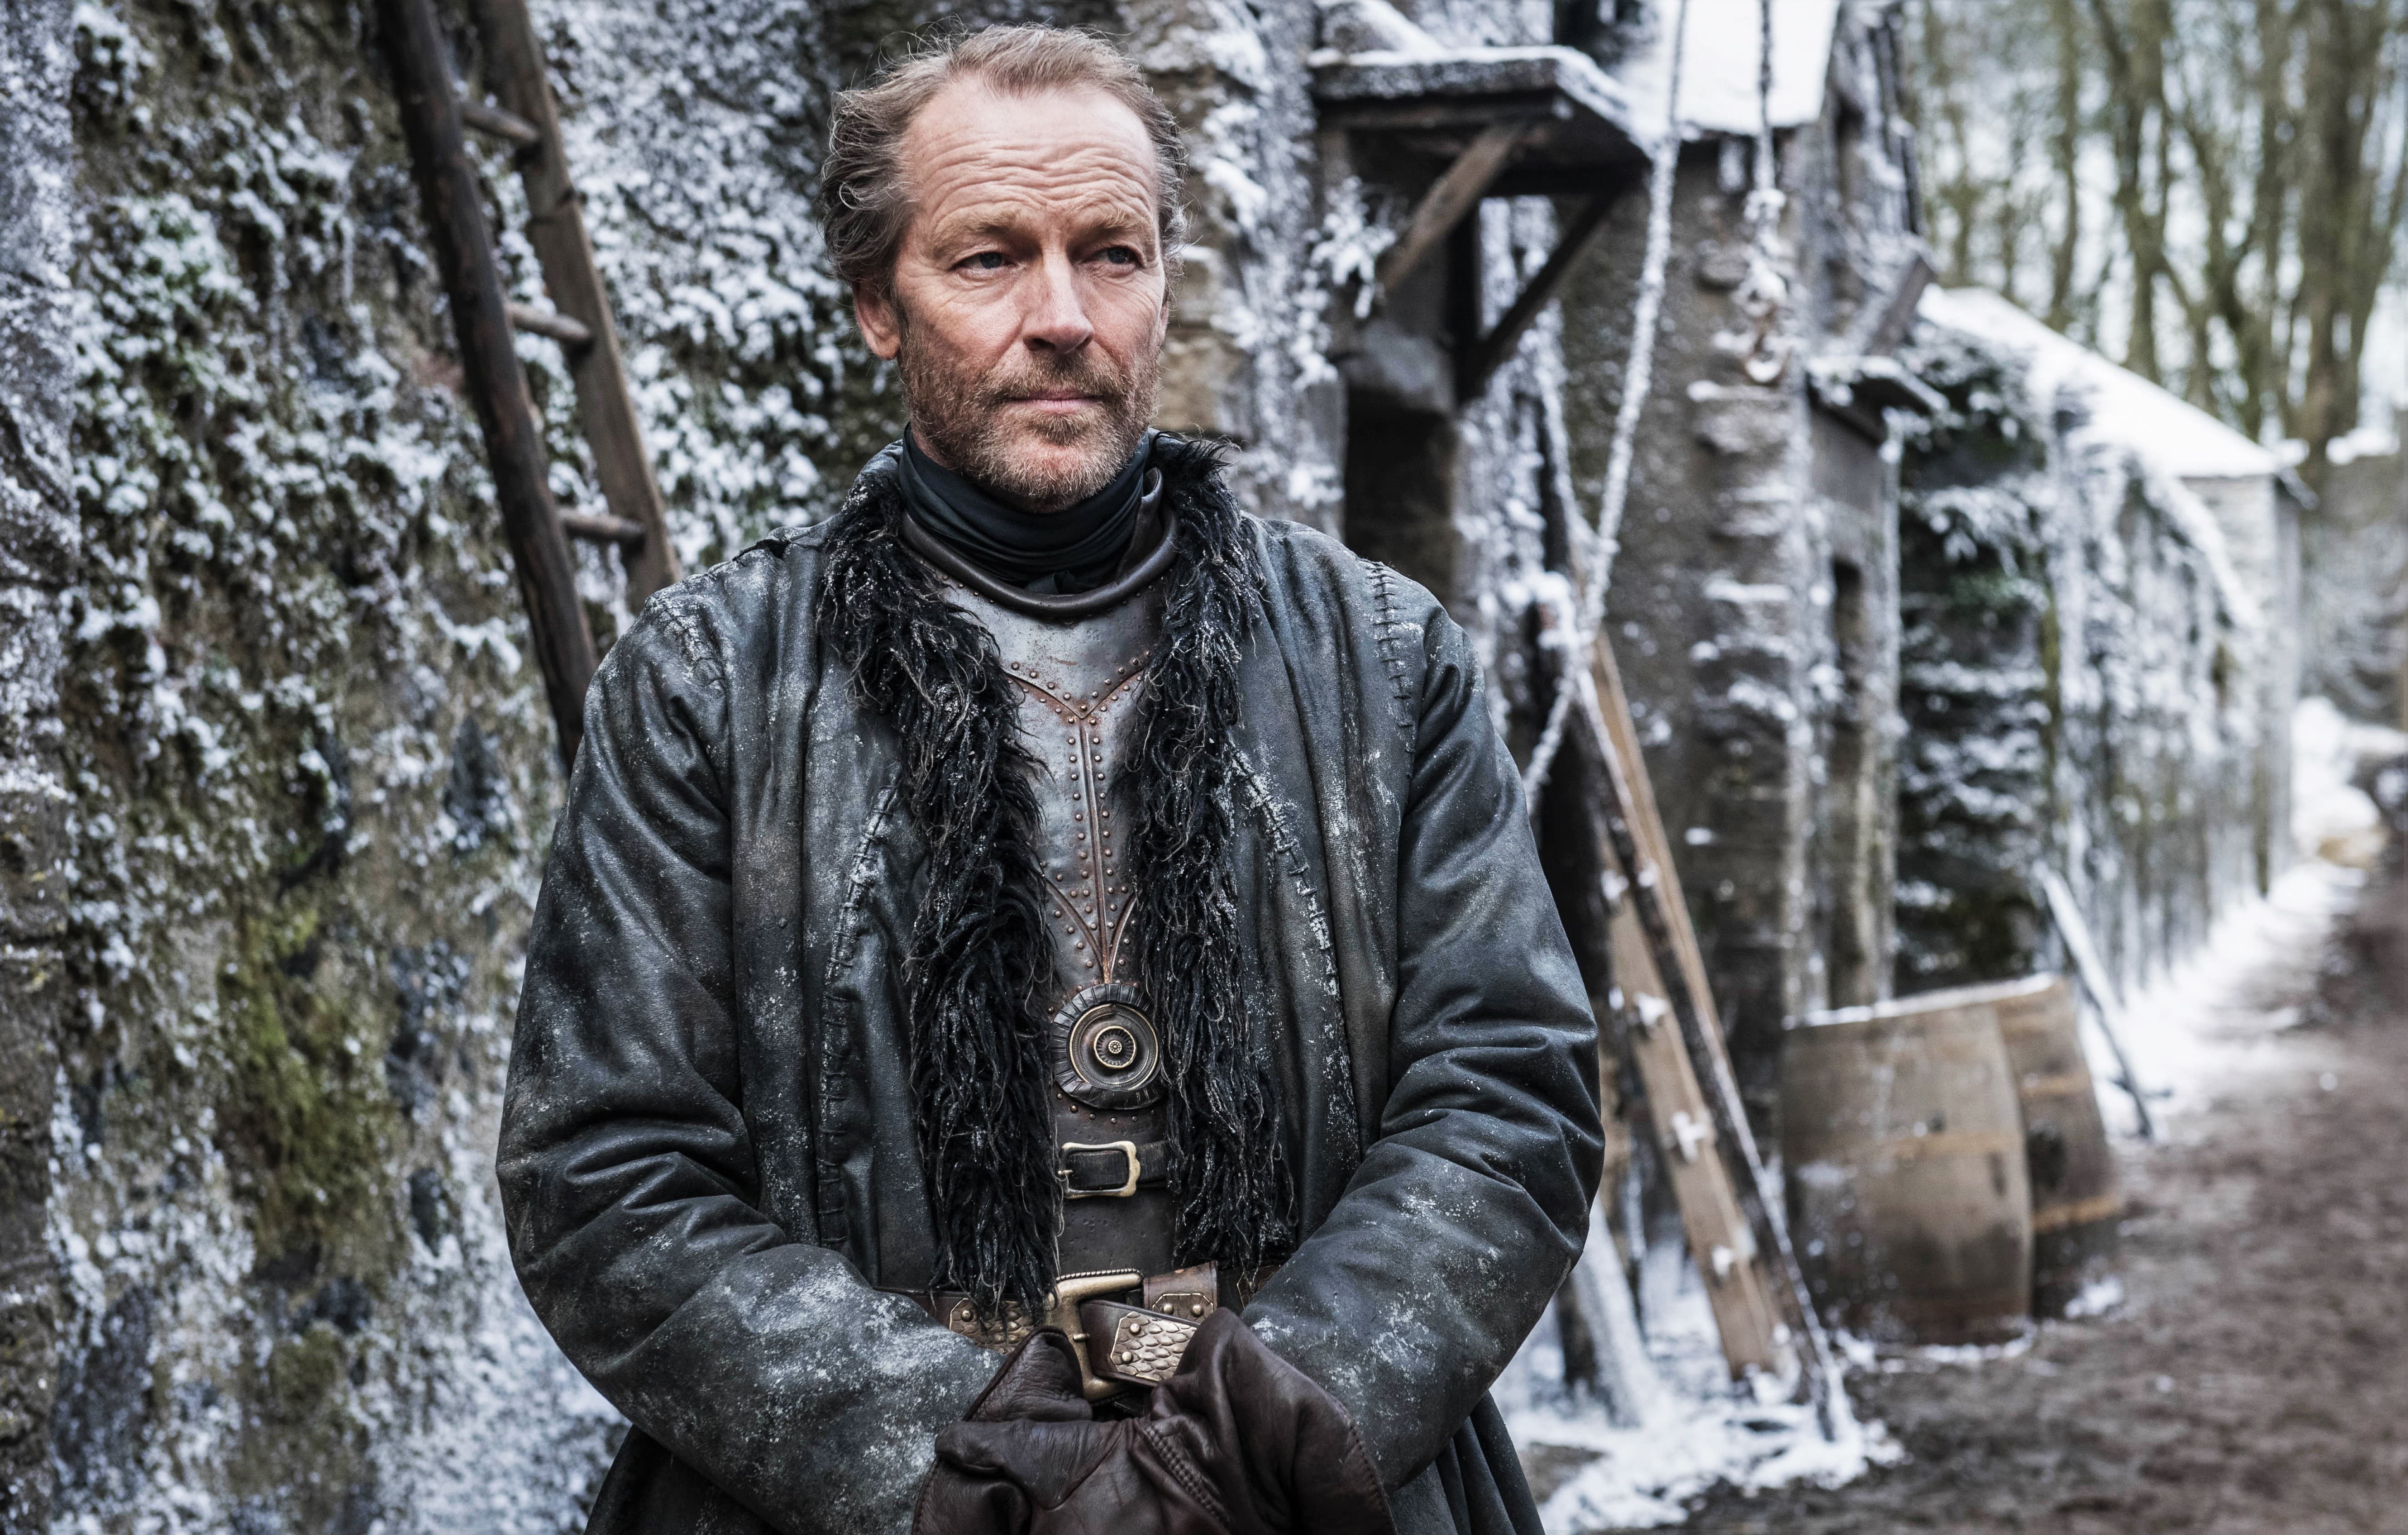 Jorah Mormont (Iain Glen) in Winter Town, near Winterfell. Photo: HBO